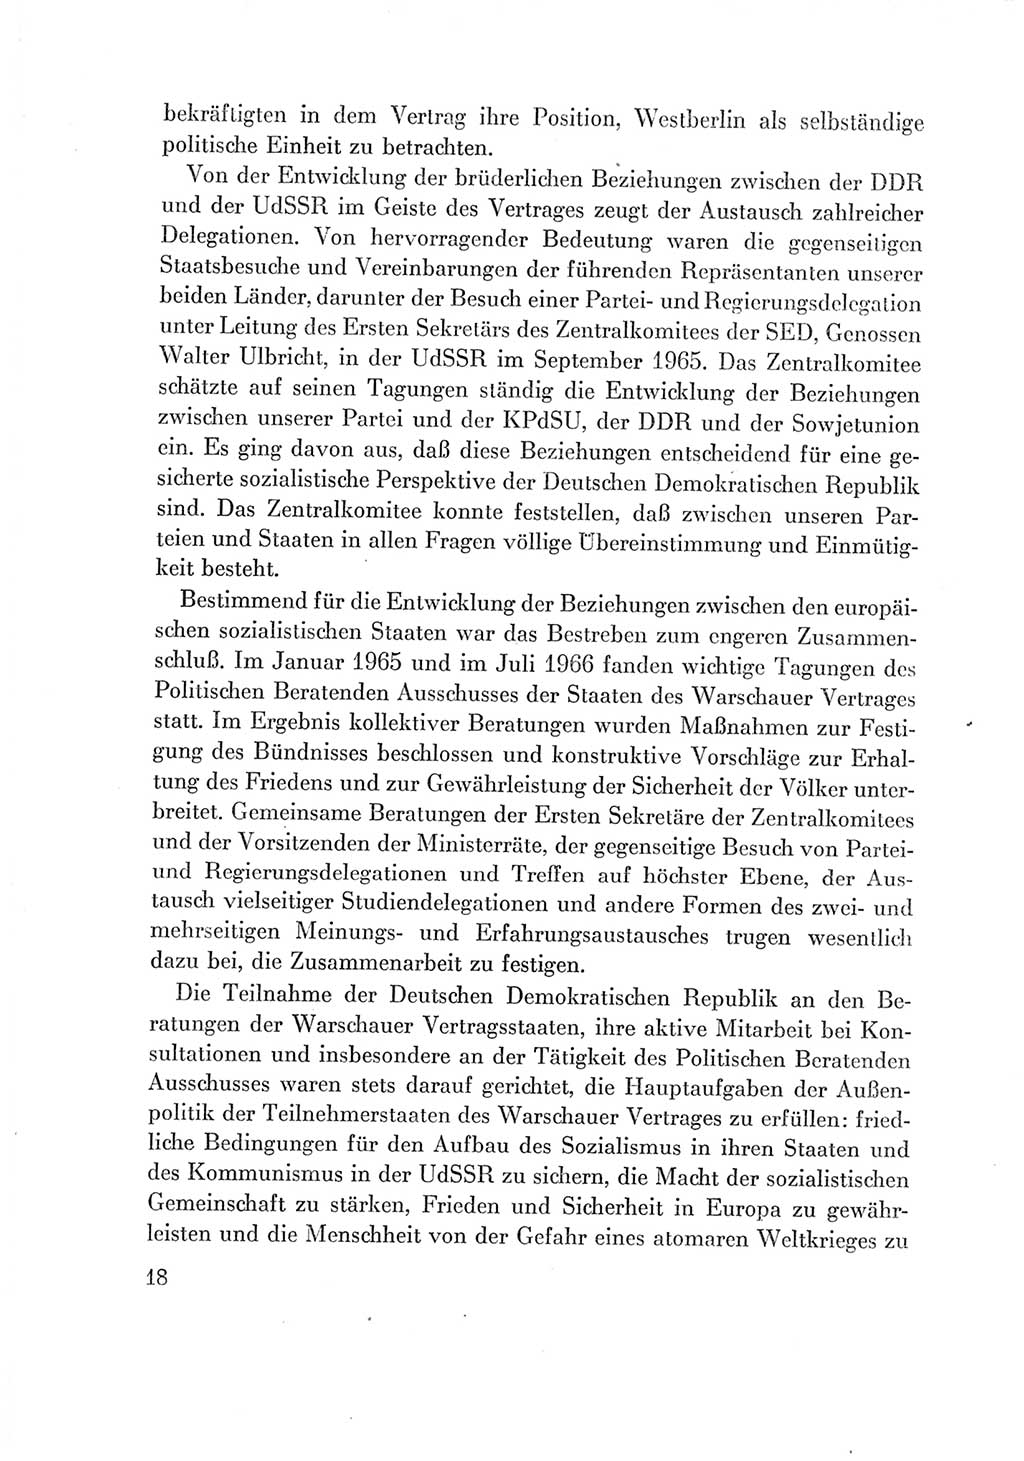 Protokoll der Verhandlungen des Ⅶ. Parteitages der Sozialistischen Einheitspartei Deutschlands (SED) [Deutsche Demokratische Republik (DDR)] 1967, Band Ⅳ, Seite 18 (Prot. Verh. Ⅶ. PT SED DDR 1967, Bd. Ⅳ, S. 18)